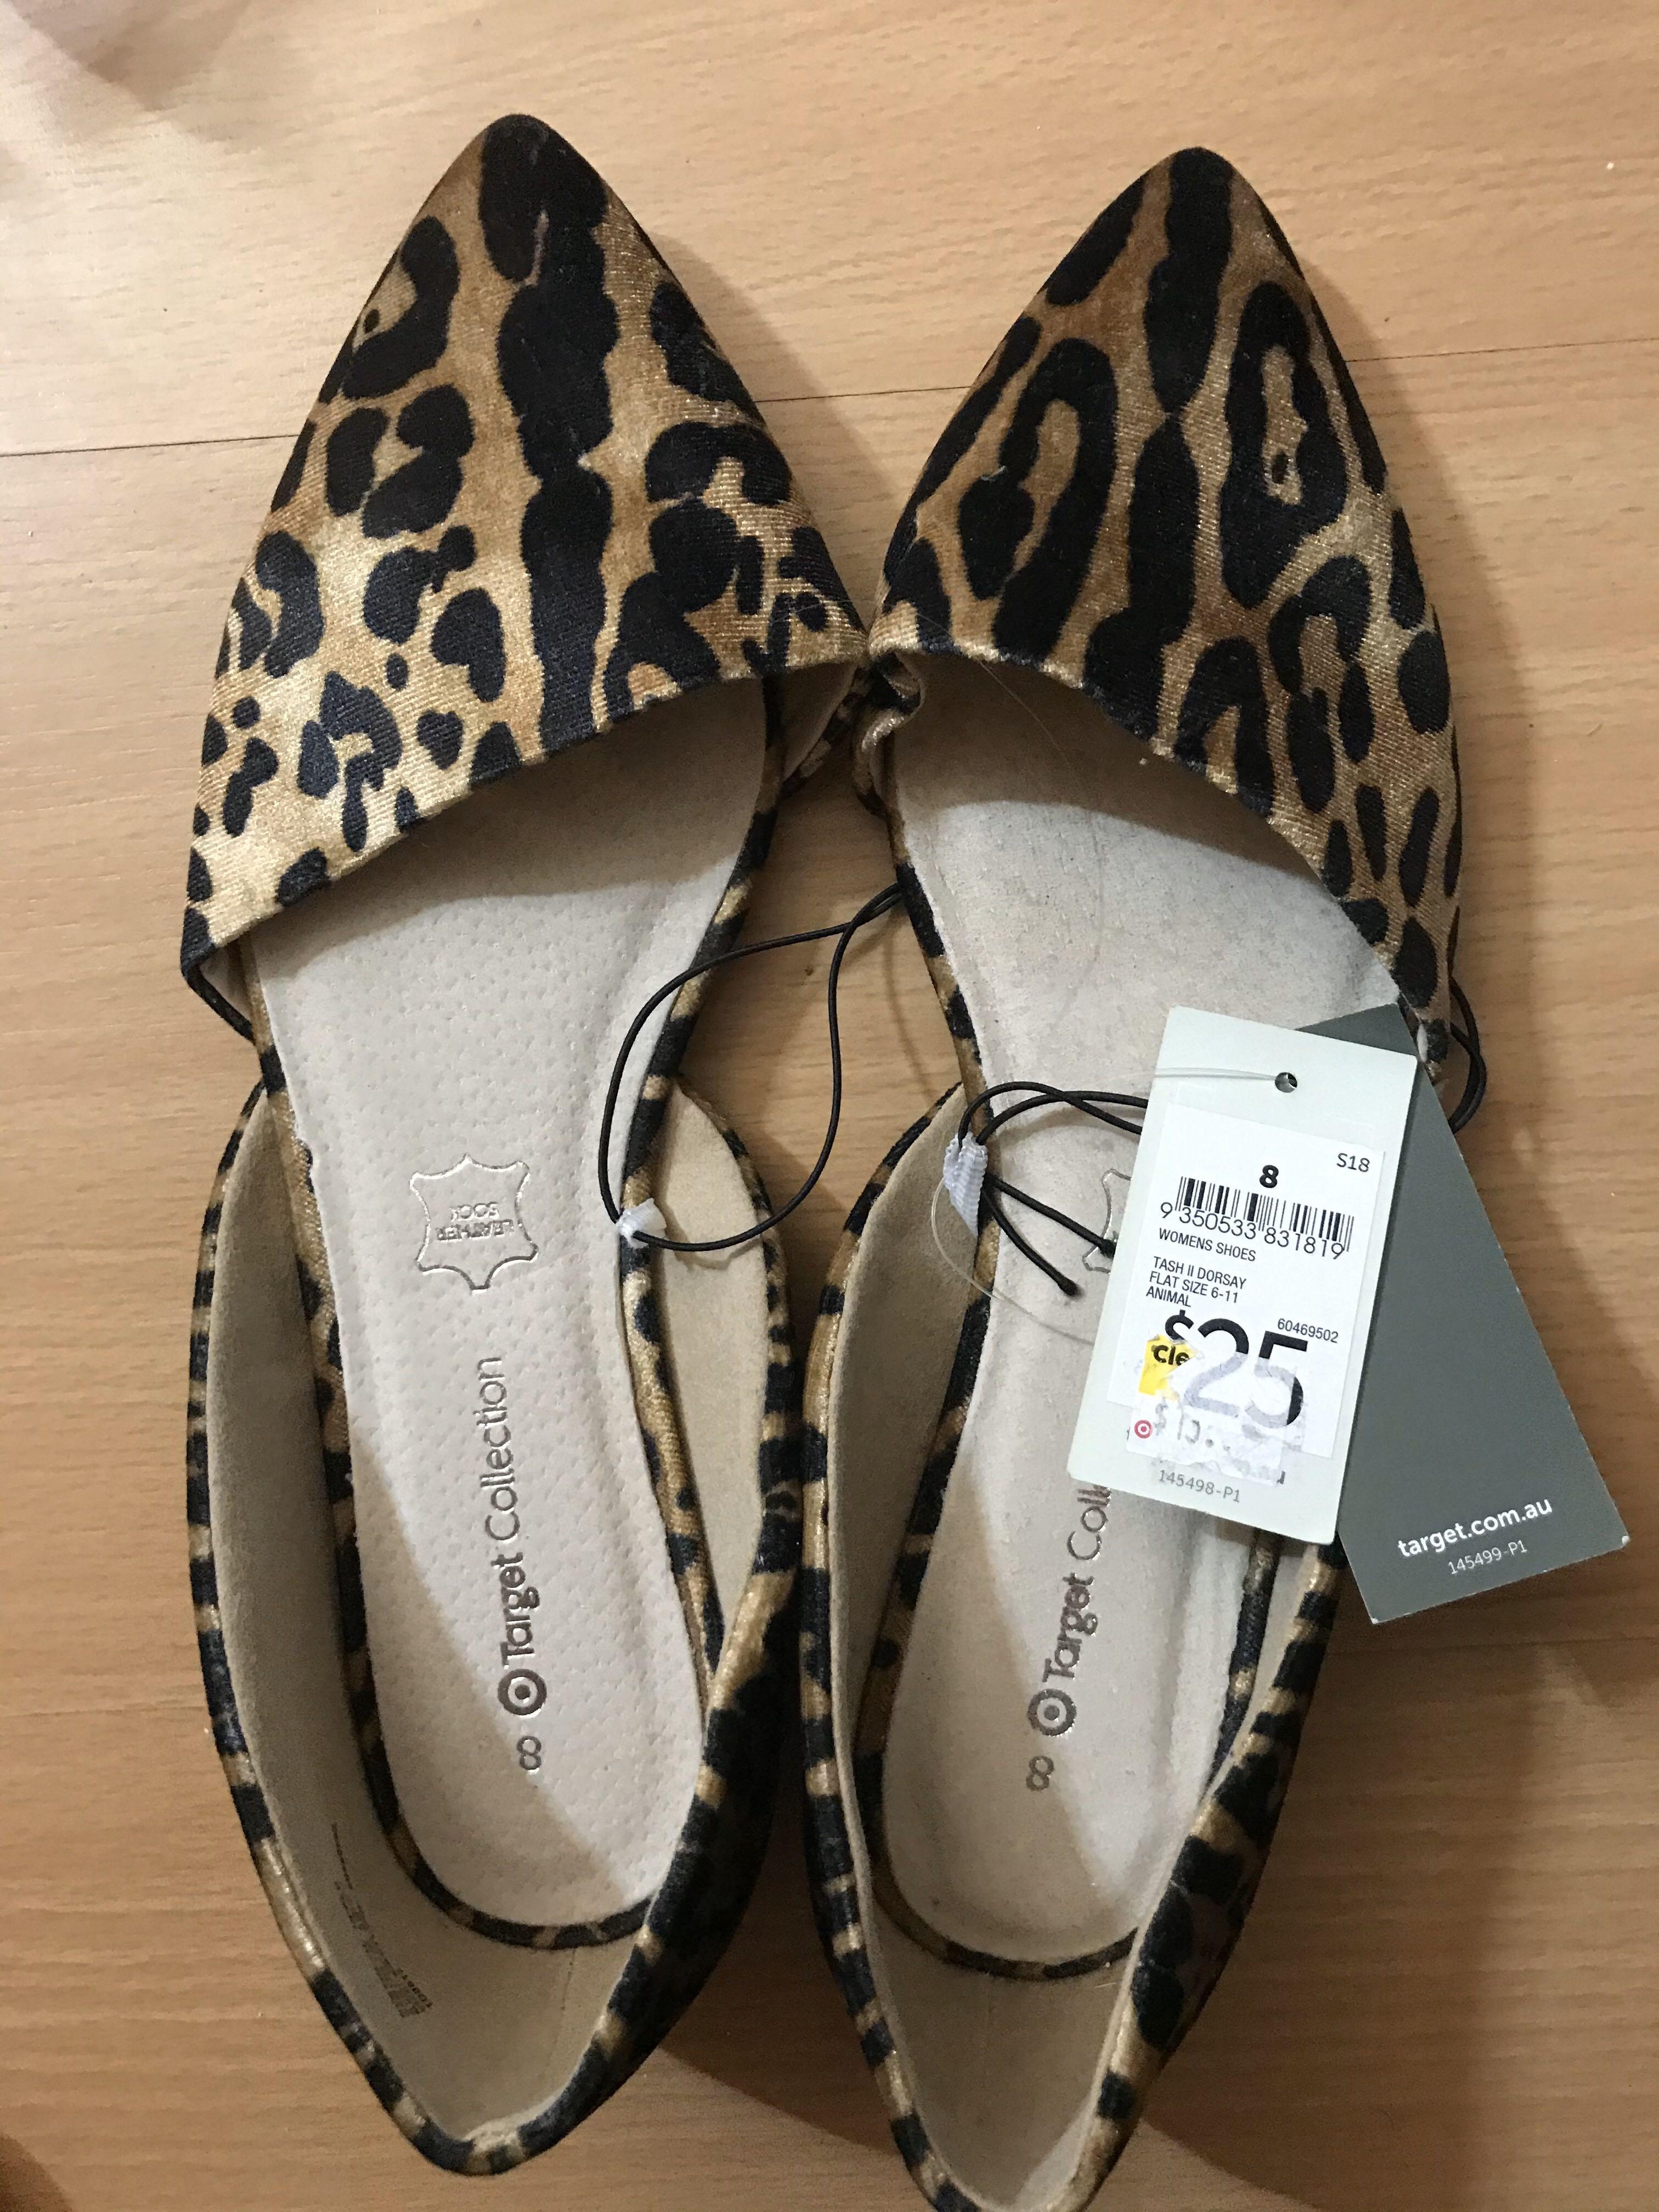 leopard flats women's shoes